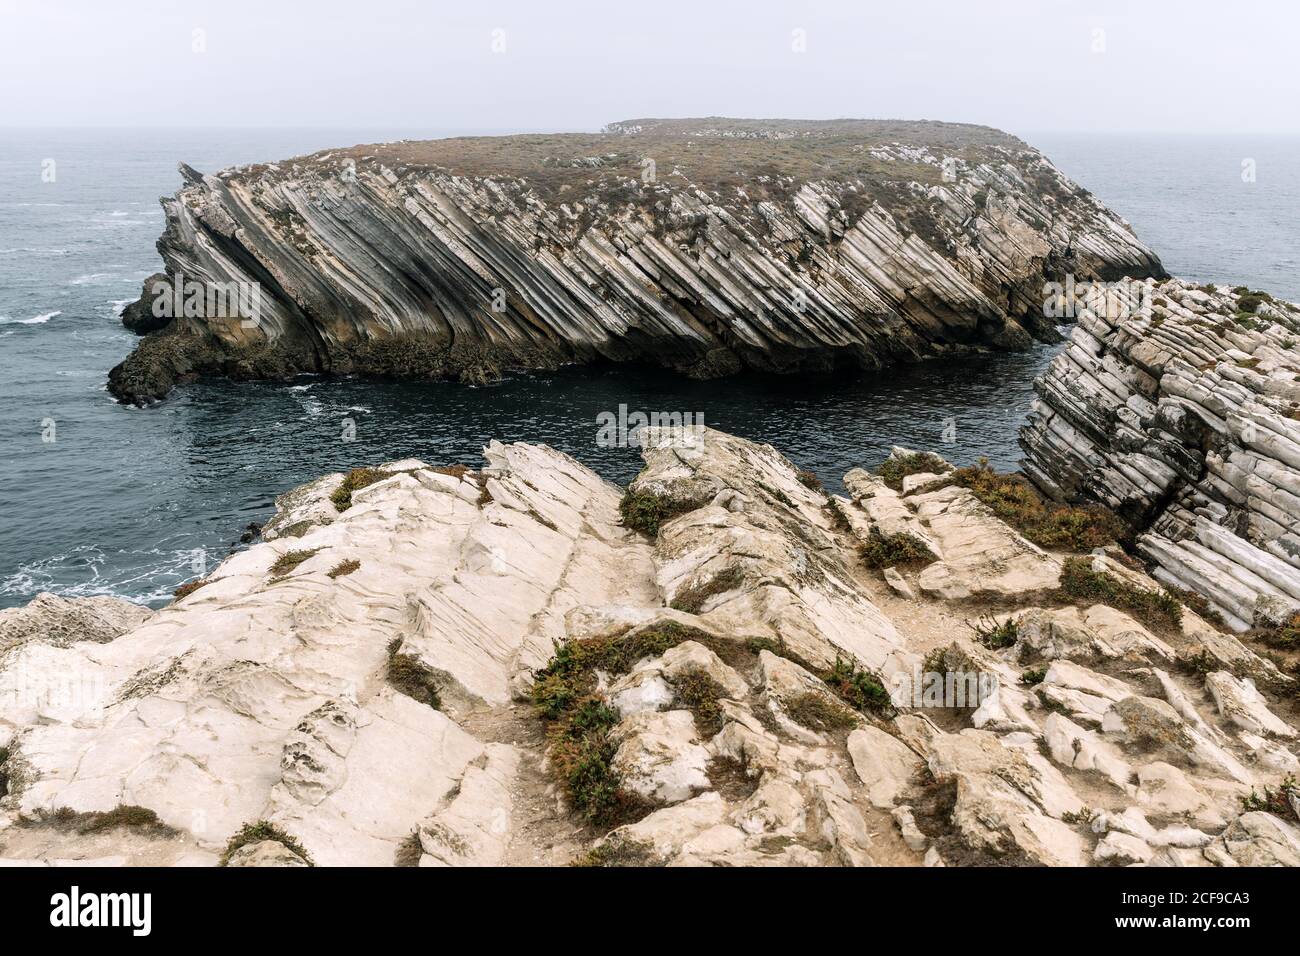 Felsformationen auf der Insel Baleal an der Atlantikküste in einem nebligen Tag. Peniche, Portugal Stockfoto